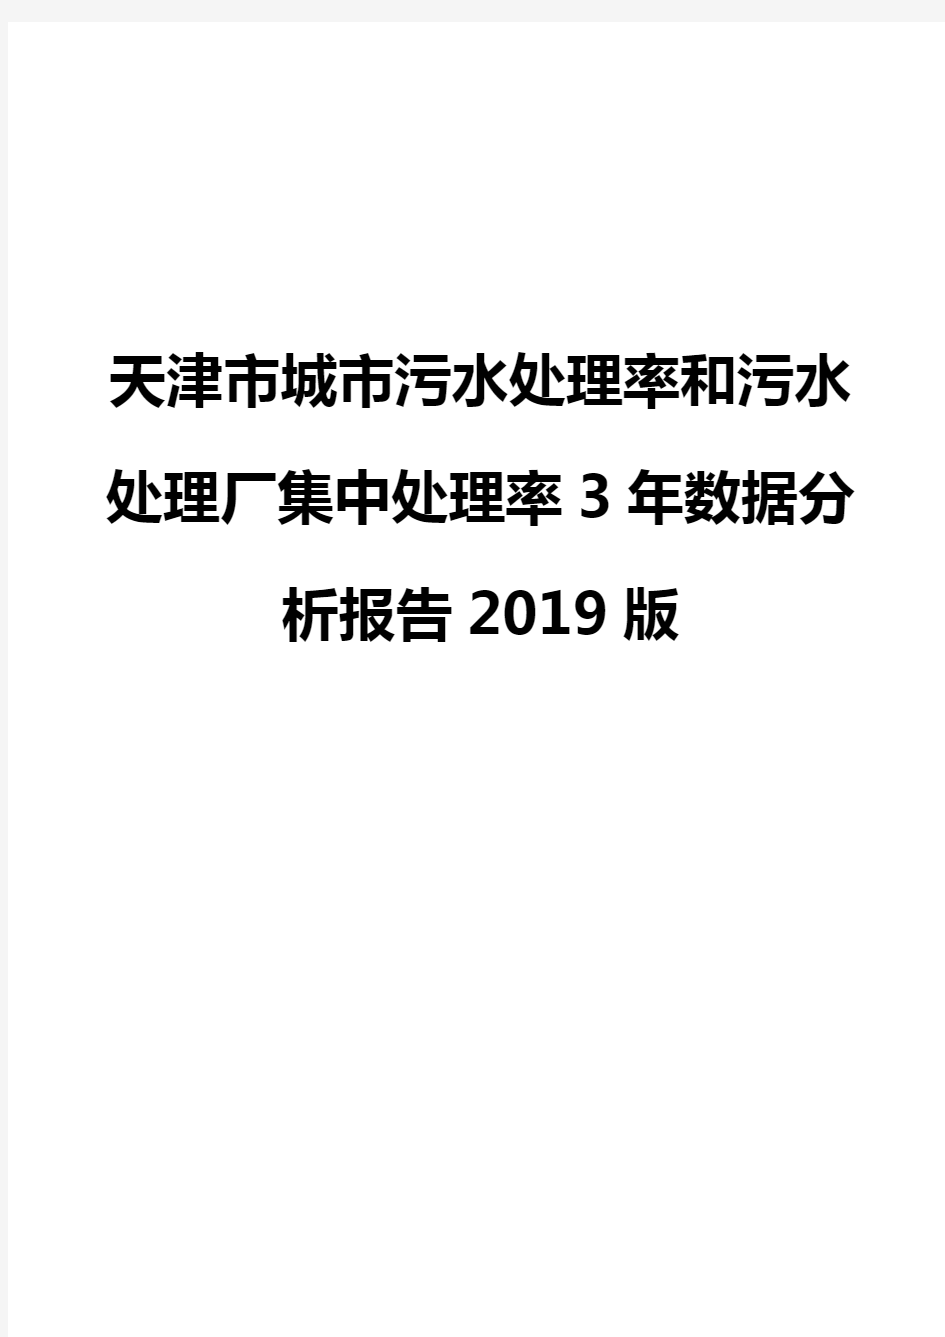 天津市城市污水处理率和污水处理厂集中处理率3年数据分析报告2019版